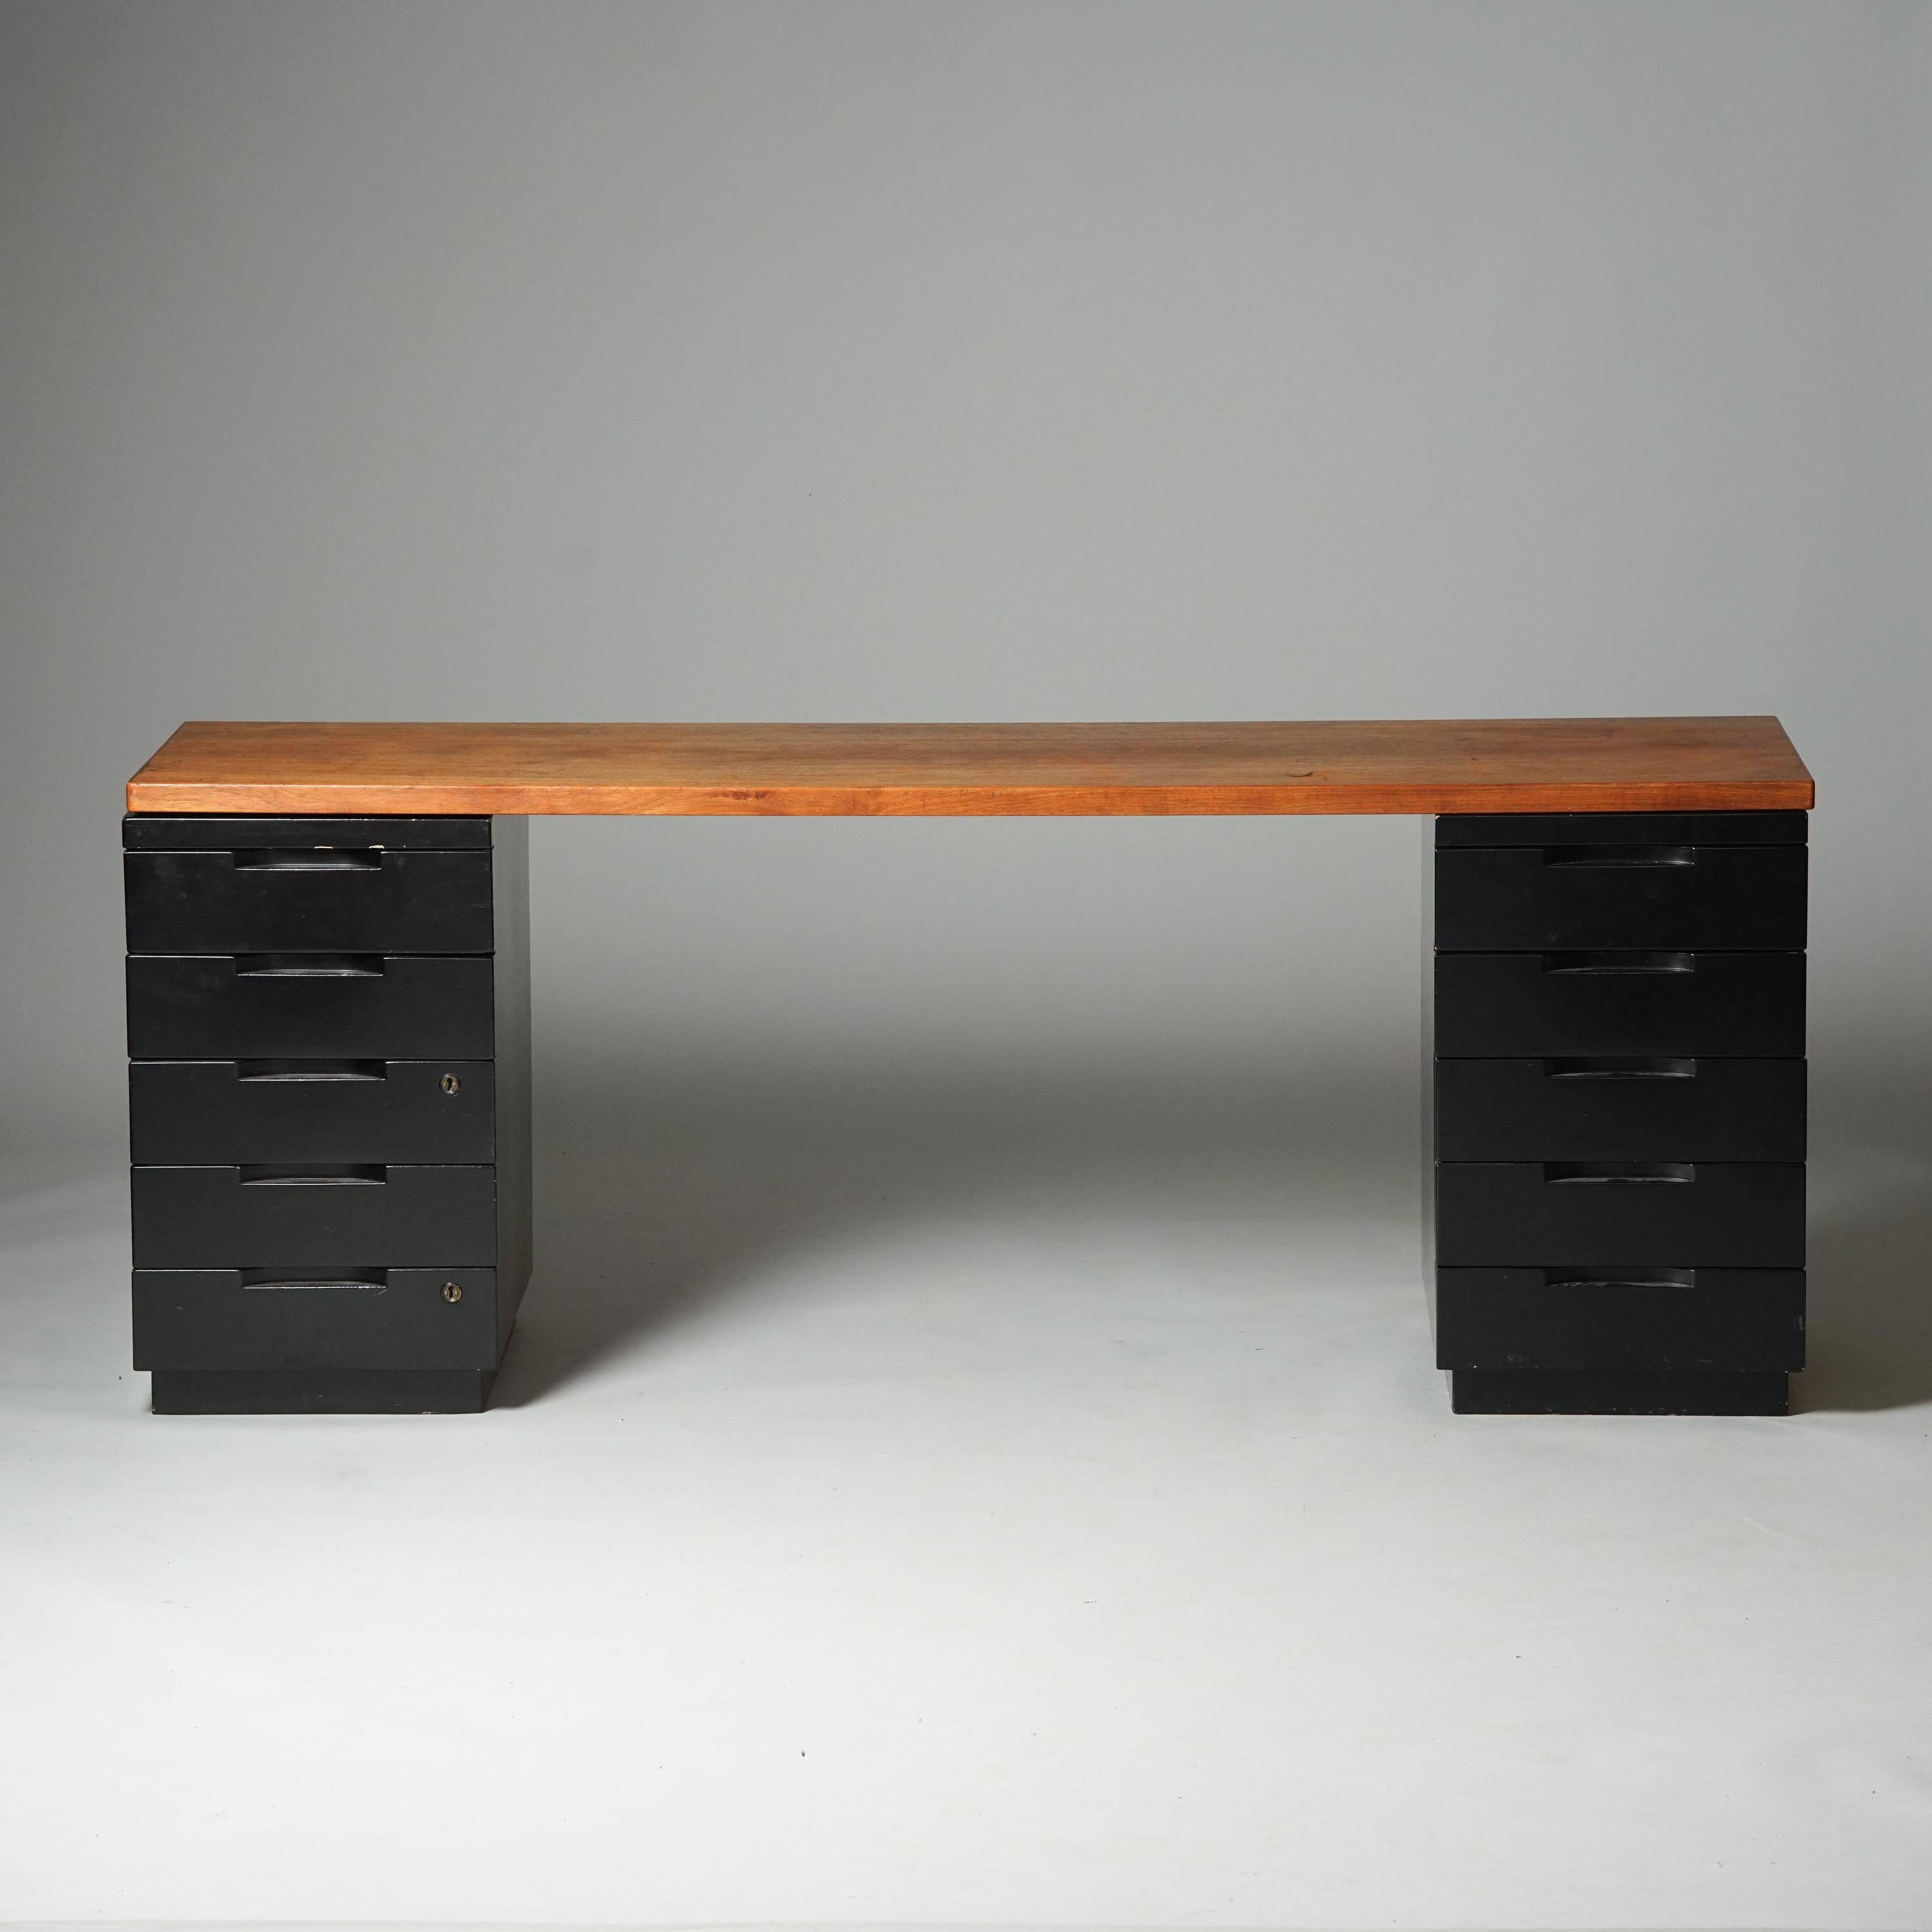 Bureau, design Alvar Aalto, fabriqué par Artek, années 1950/1960. Plateau de table en teck avec tiroirs en bois peint. Bon état vintage, patine et usure correspondant à l'âge et à l'utilisation. 

Alvar Aalto (1898-1976) est probablement